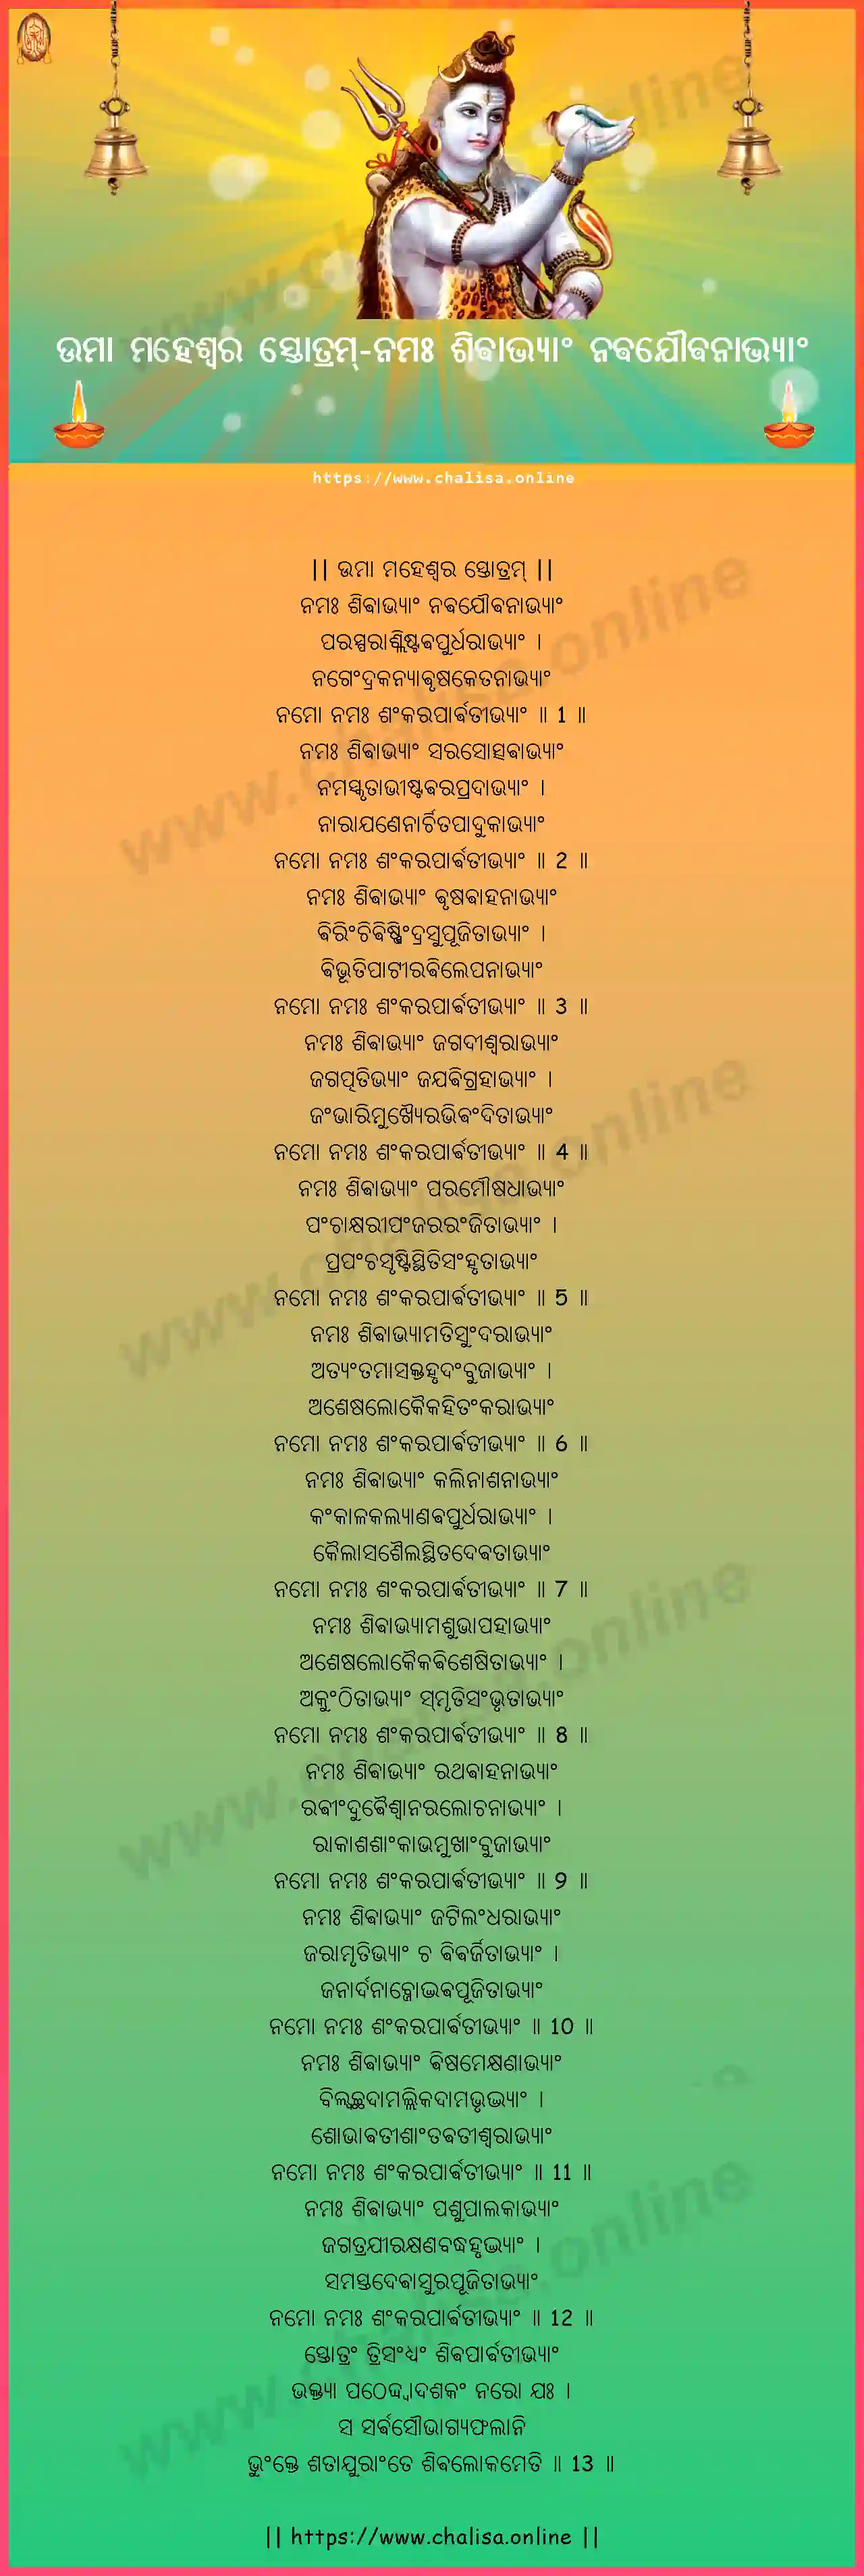 namah-sivabhyam-uma-maheswara-stotram-oriya-oriya-lyrics-download